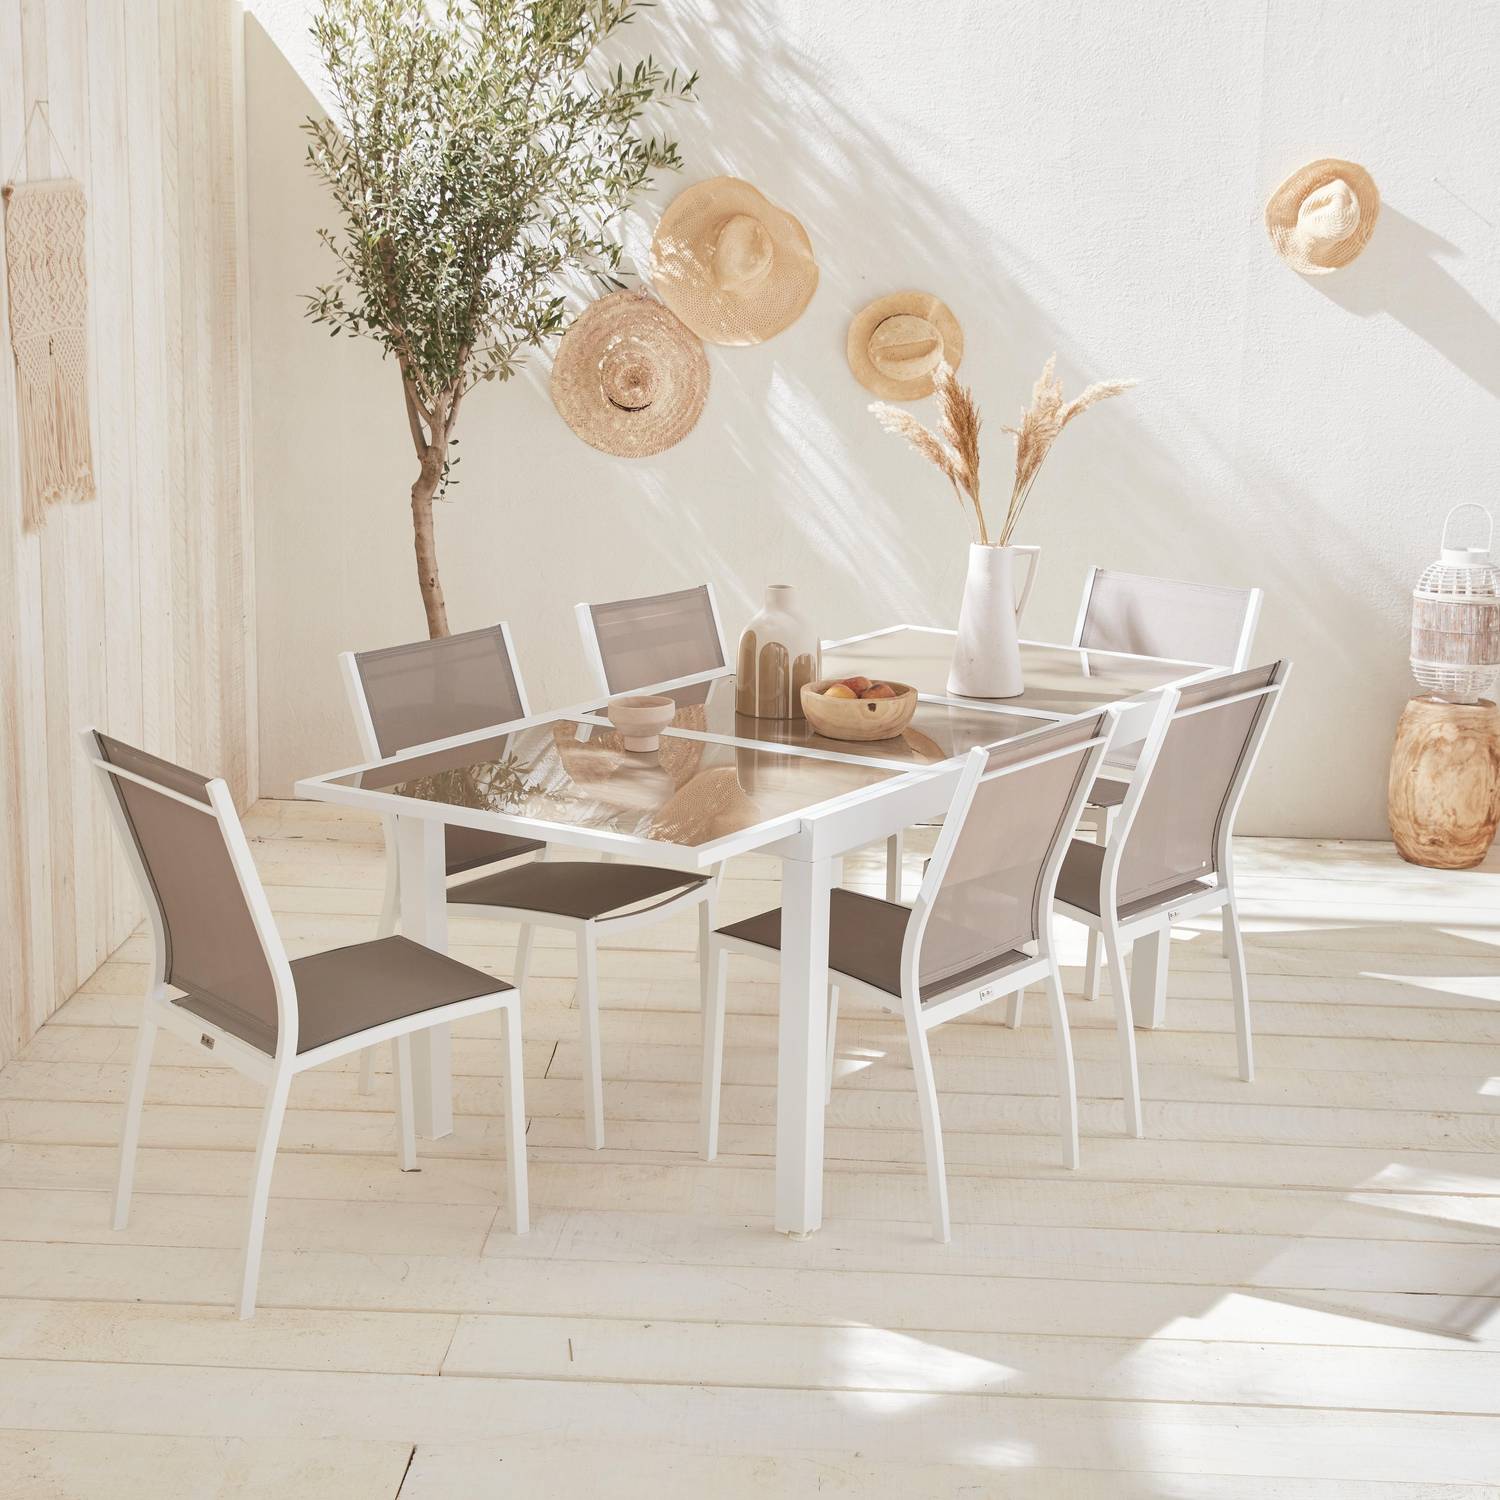 Tavolo da giardino allungabile - modello: Orlando, colore: Talpa - Tavolo in alluminio, dimensioni: 150/210cm, ripiano in vetro, prolunga e 6 sedie in textilene Photo1